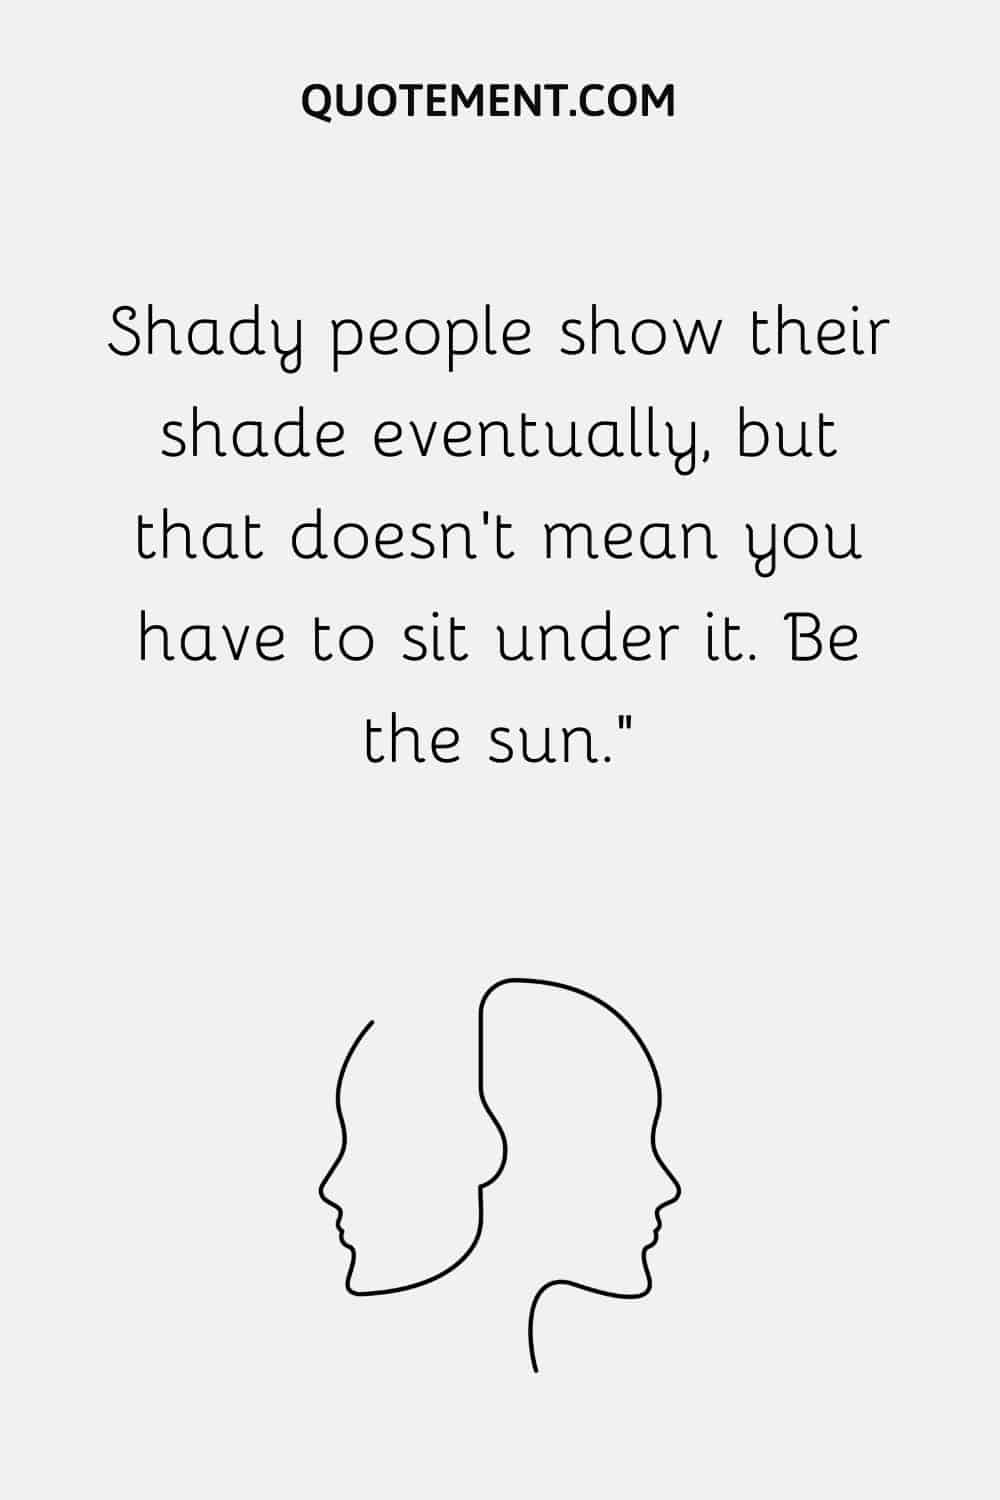 La gente sombría acaba mostrando su sombra, pero eso no significa que tengas que sentarte bajo ella